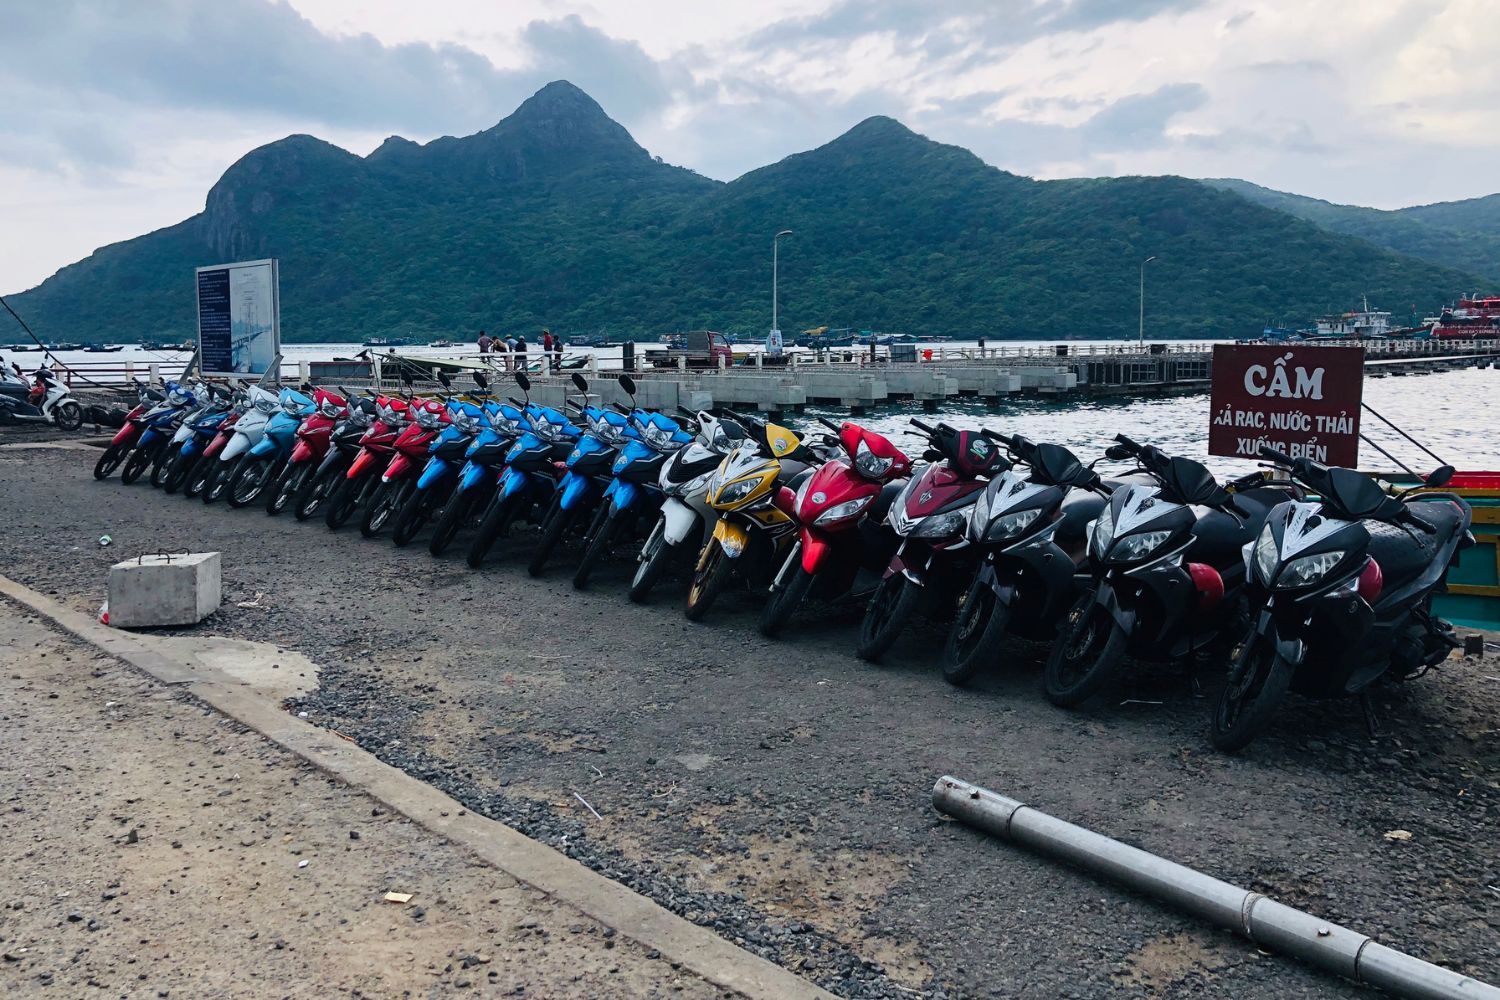 Địa điểm thuê xe máy ở Côn Đảo mà hội mê phượt không thể bỏ lỡ 3